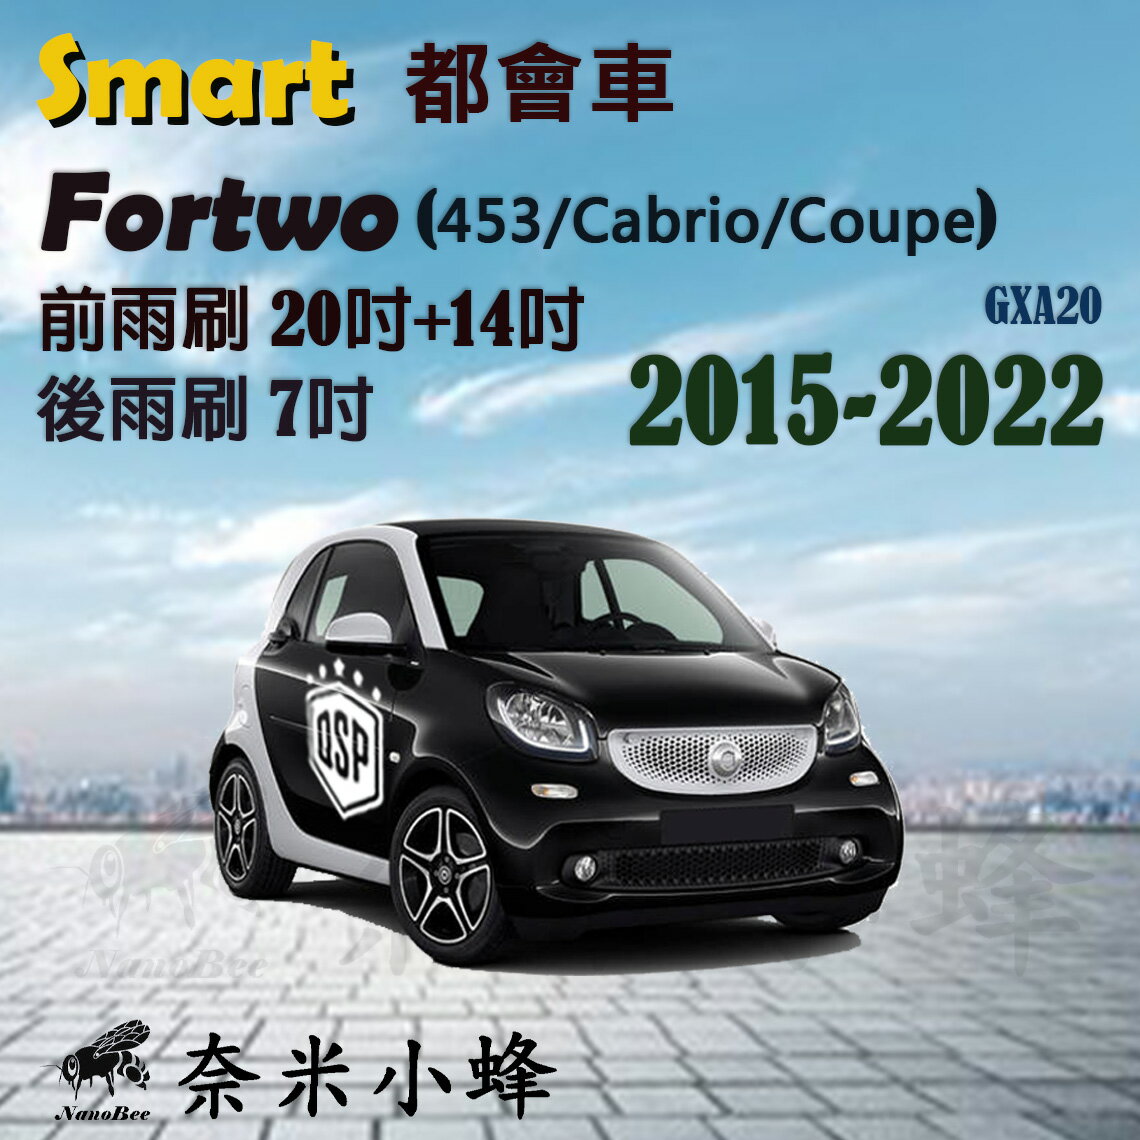 【奈米小蜂】Smart都會車 Fortwo双門(453) 2015-NOW雨刷 後雨刷 矽膠雨刷 矽膠鍍膜 軟骨雨刷